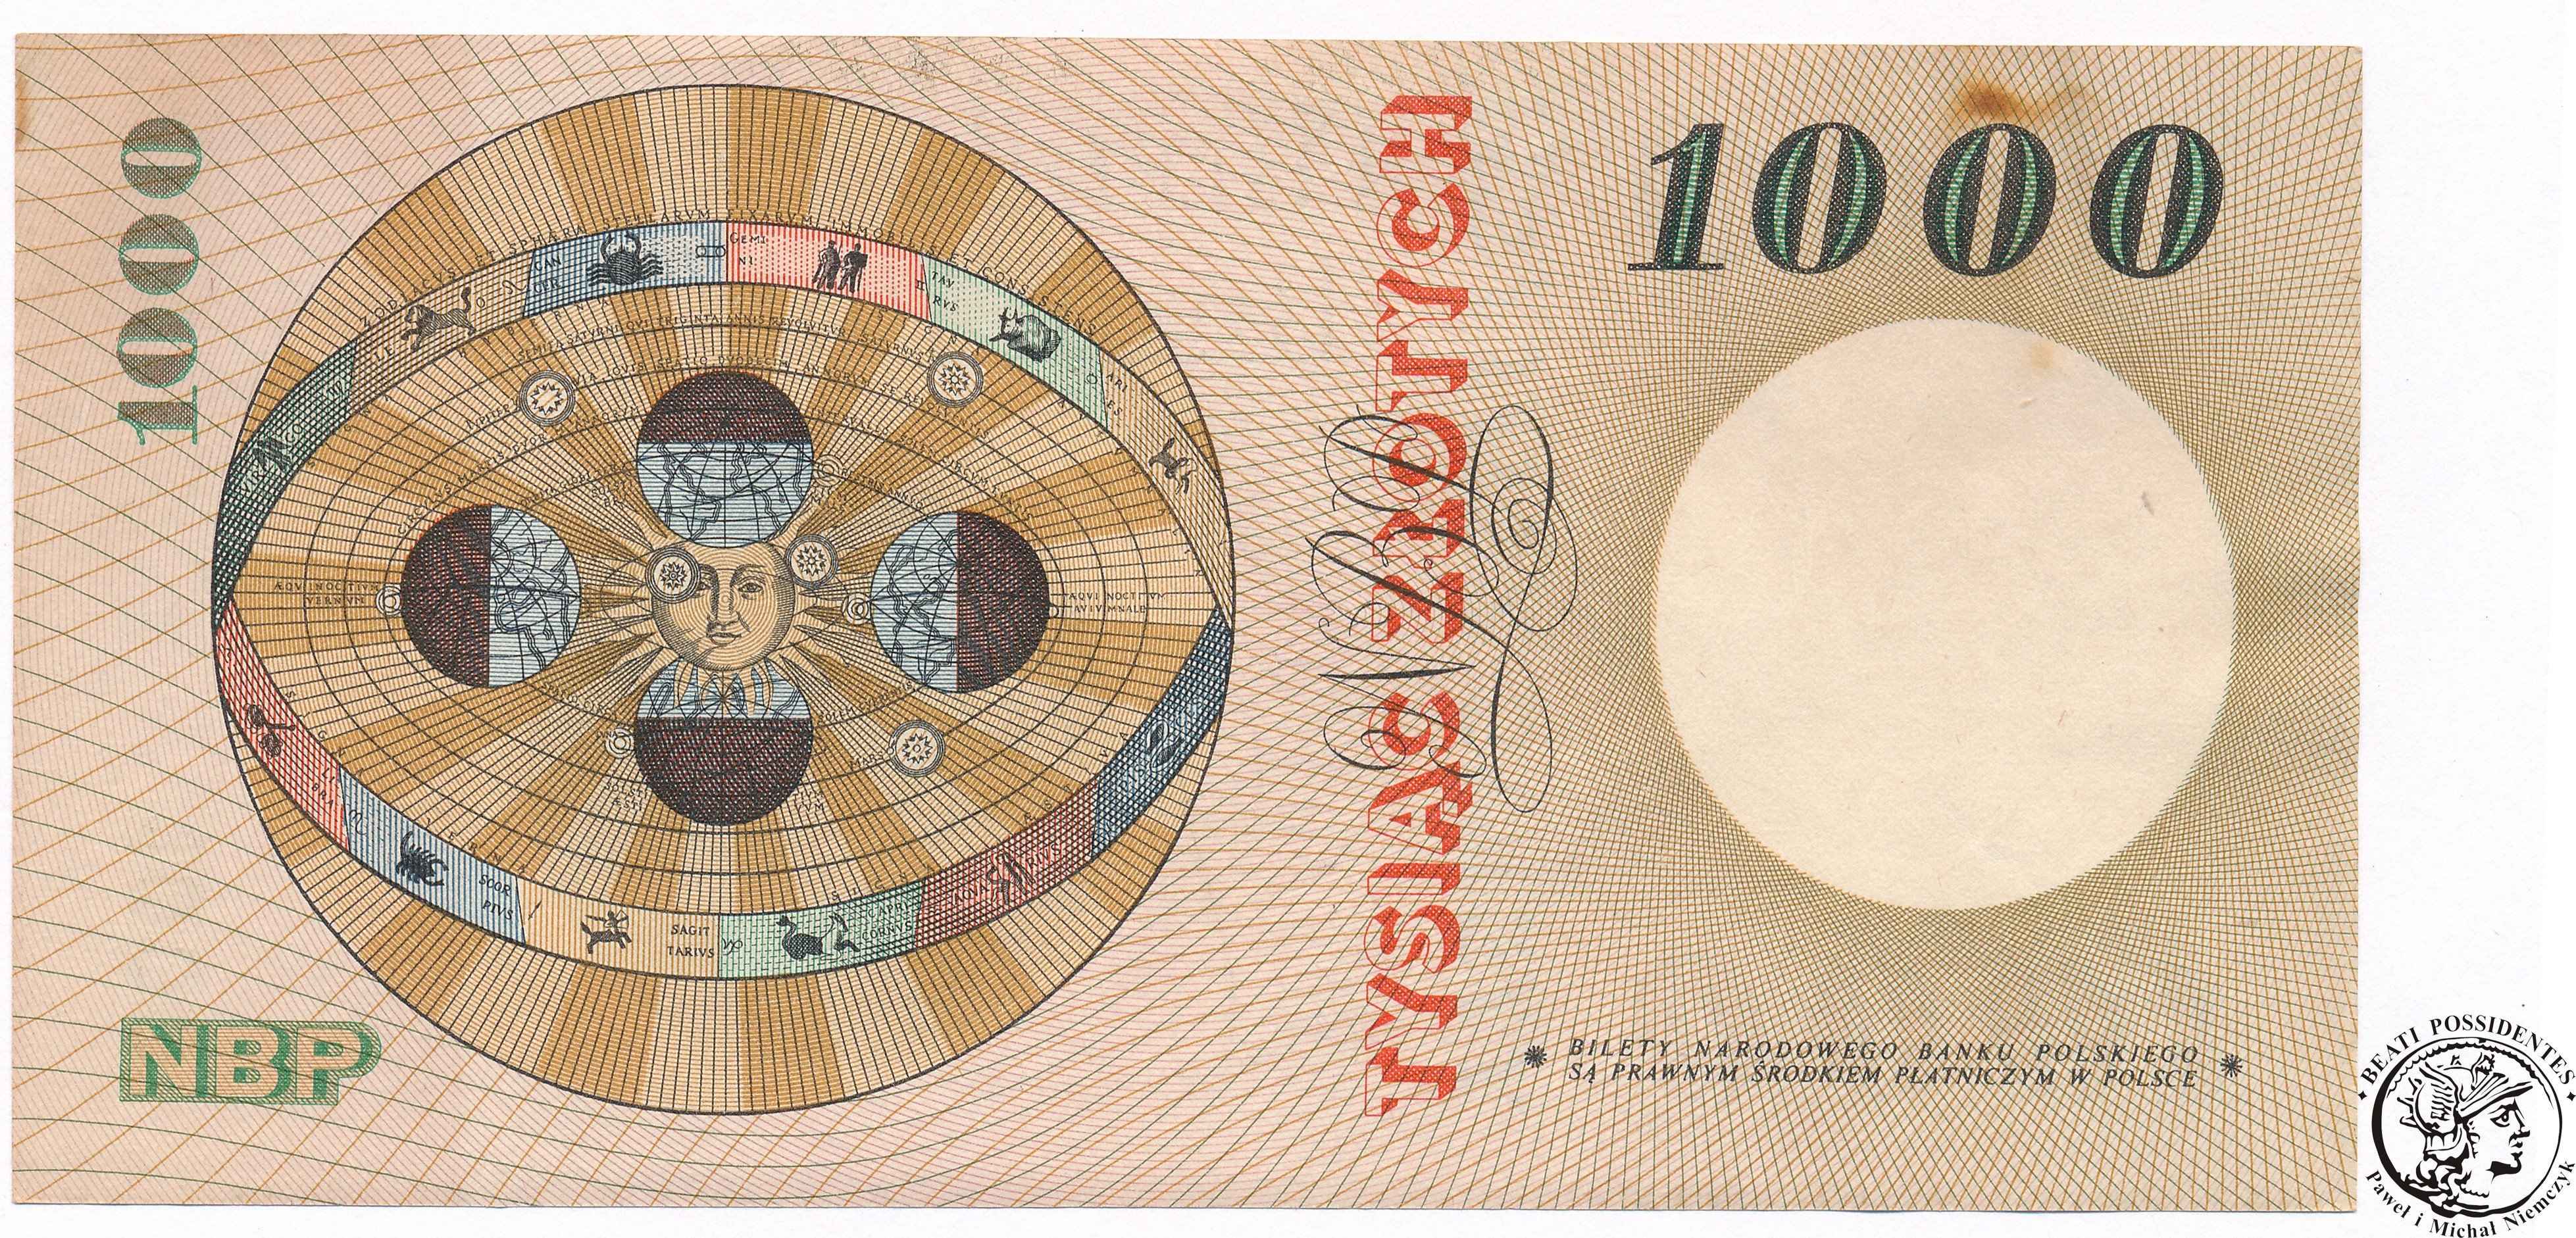 Banknot 1000 złotych 1965 Kopernik seria B 